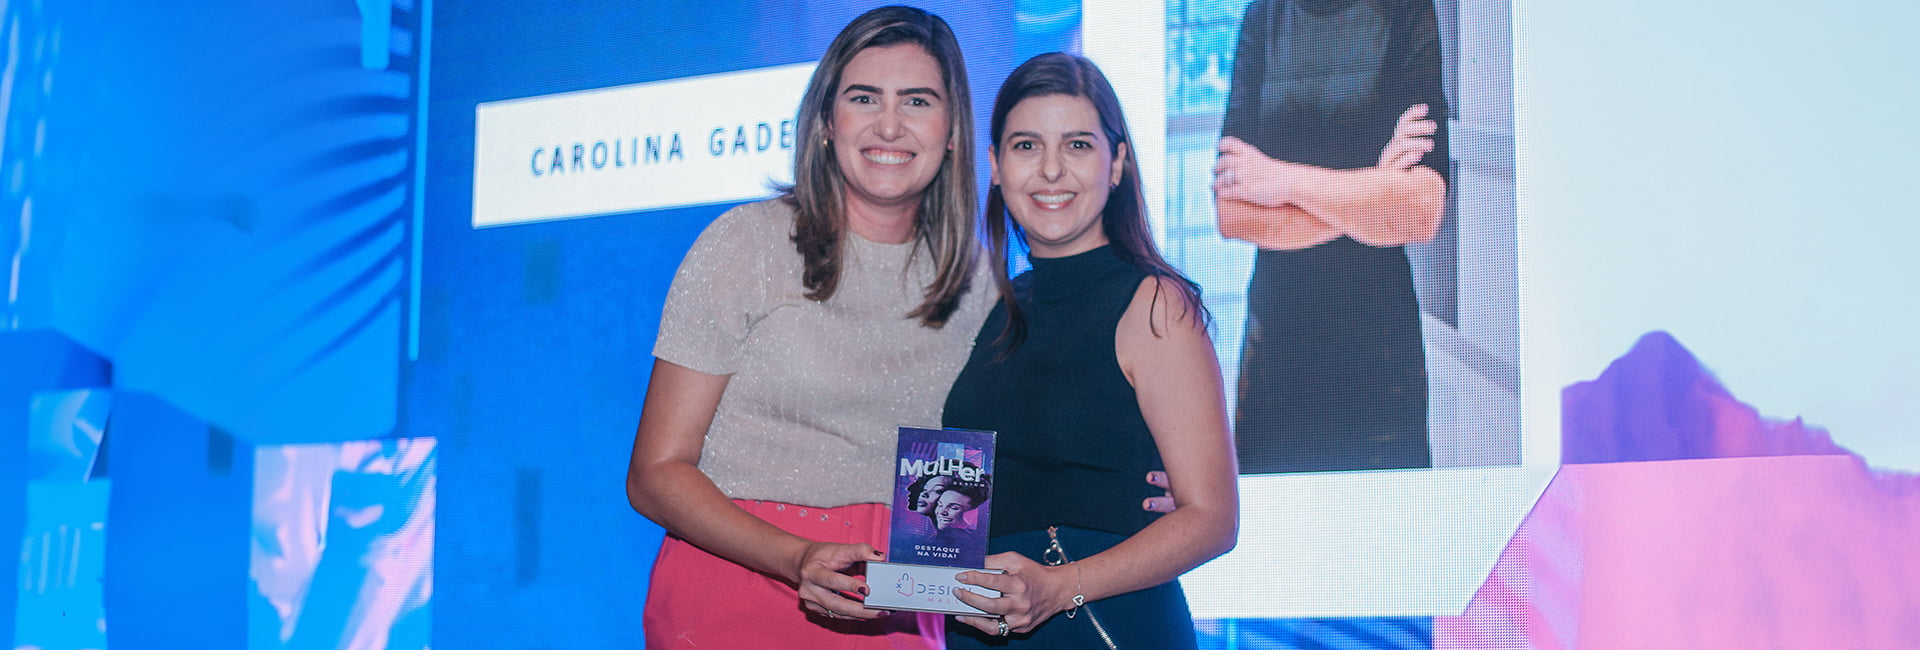 Diretora da Unifacisa, Carolina Gadelha, foi homenageada em evento alusivo ao Dia Internacional da Mulher